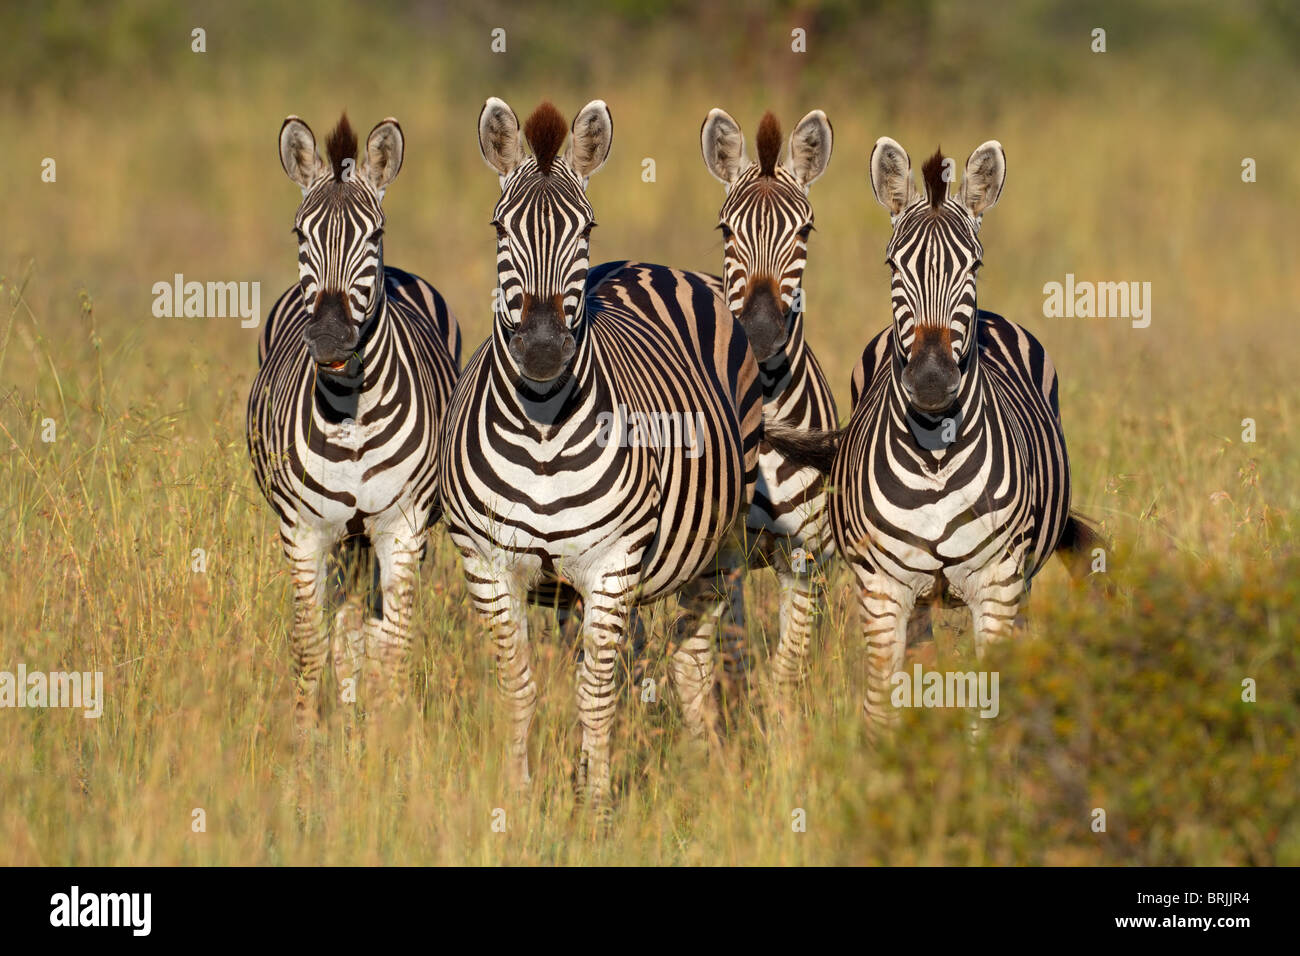 Four plains (Burchell's) Zebras (Equus quagga), South Africa Stock Photo